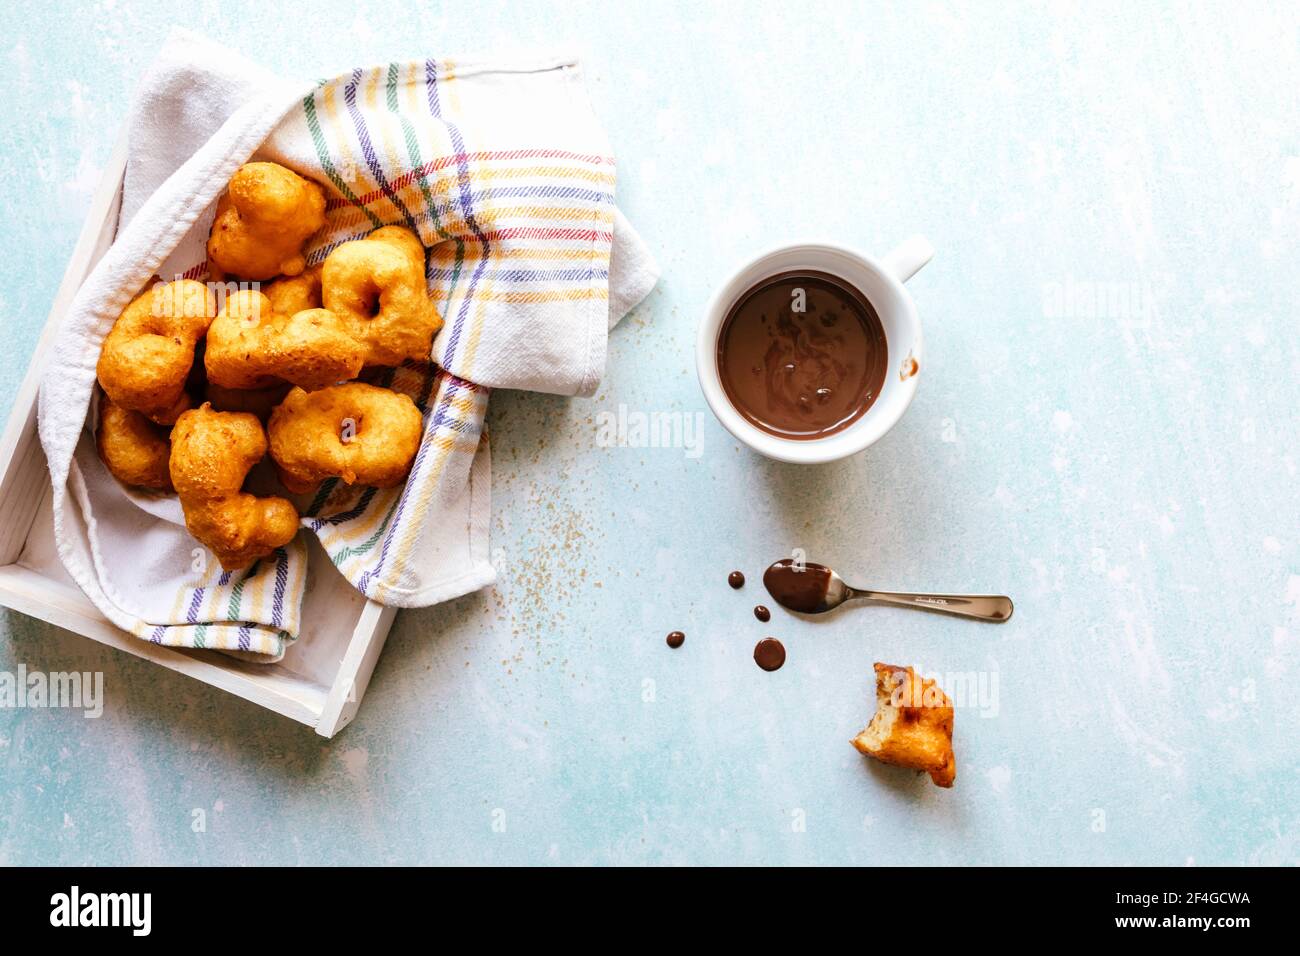 Piatto di fritter dolce morso accanto a una tazza con cioccolato Foto Stock